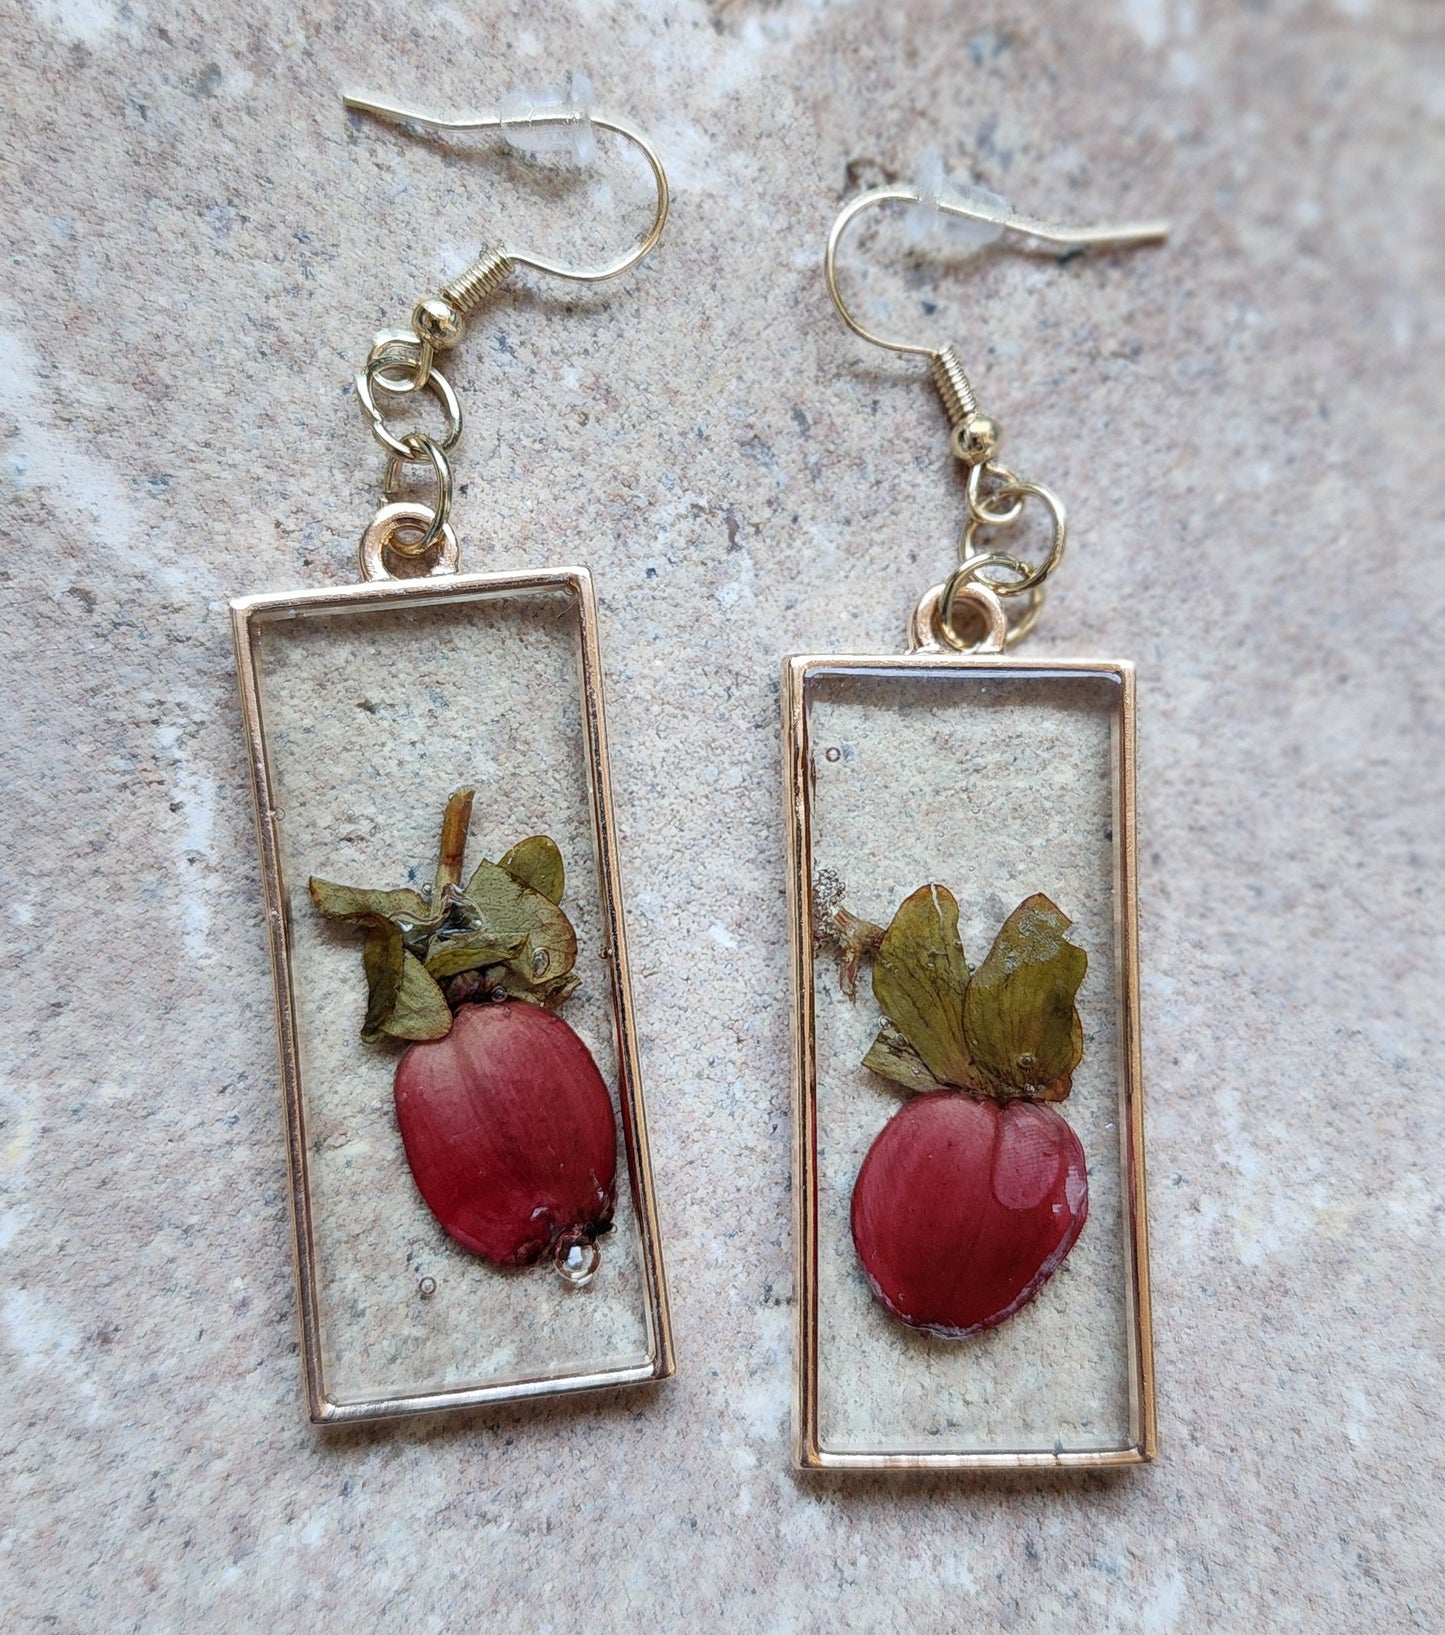 Pressed Flower Earrings - Hypericum Berries